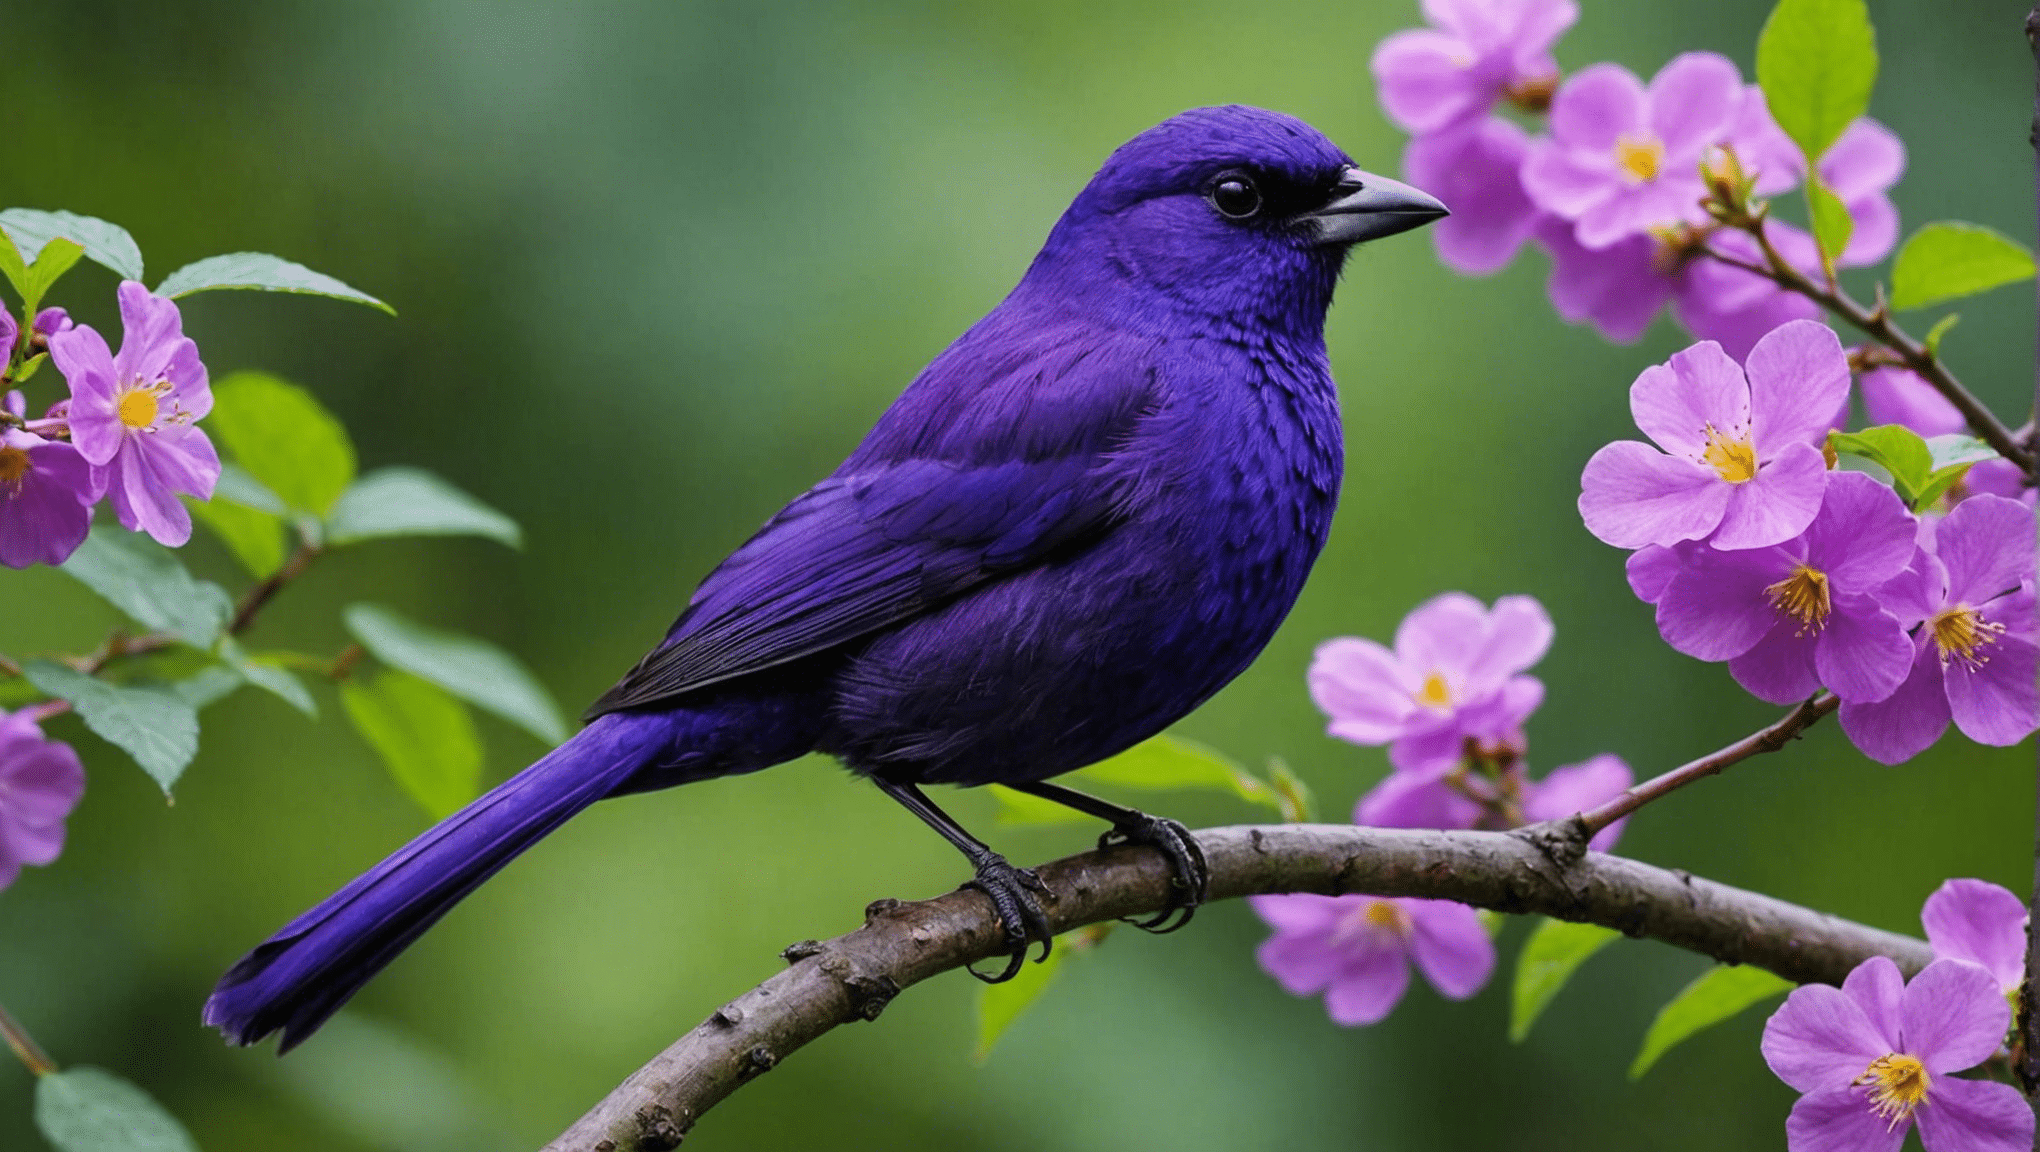 鳥類の種とそのユニークな色彩に関するこの有益な記事を読んで、紫色の鳥が珍しいかどうかを調べてください。